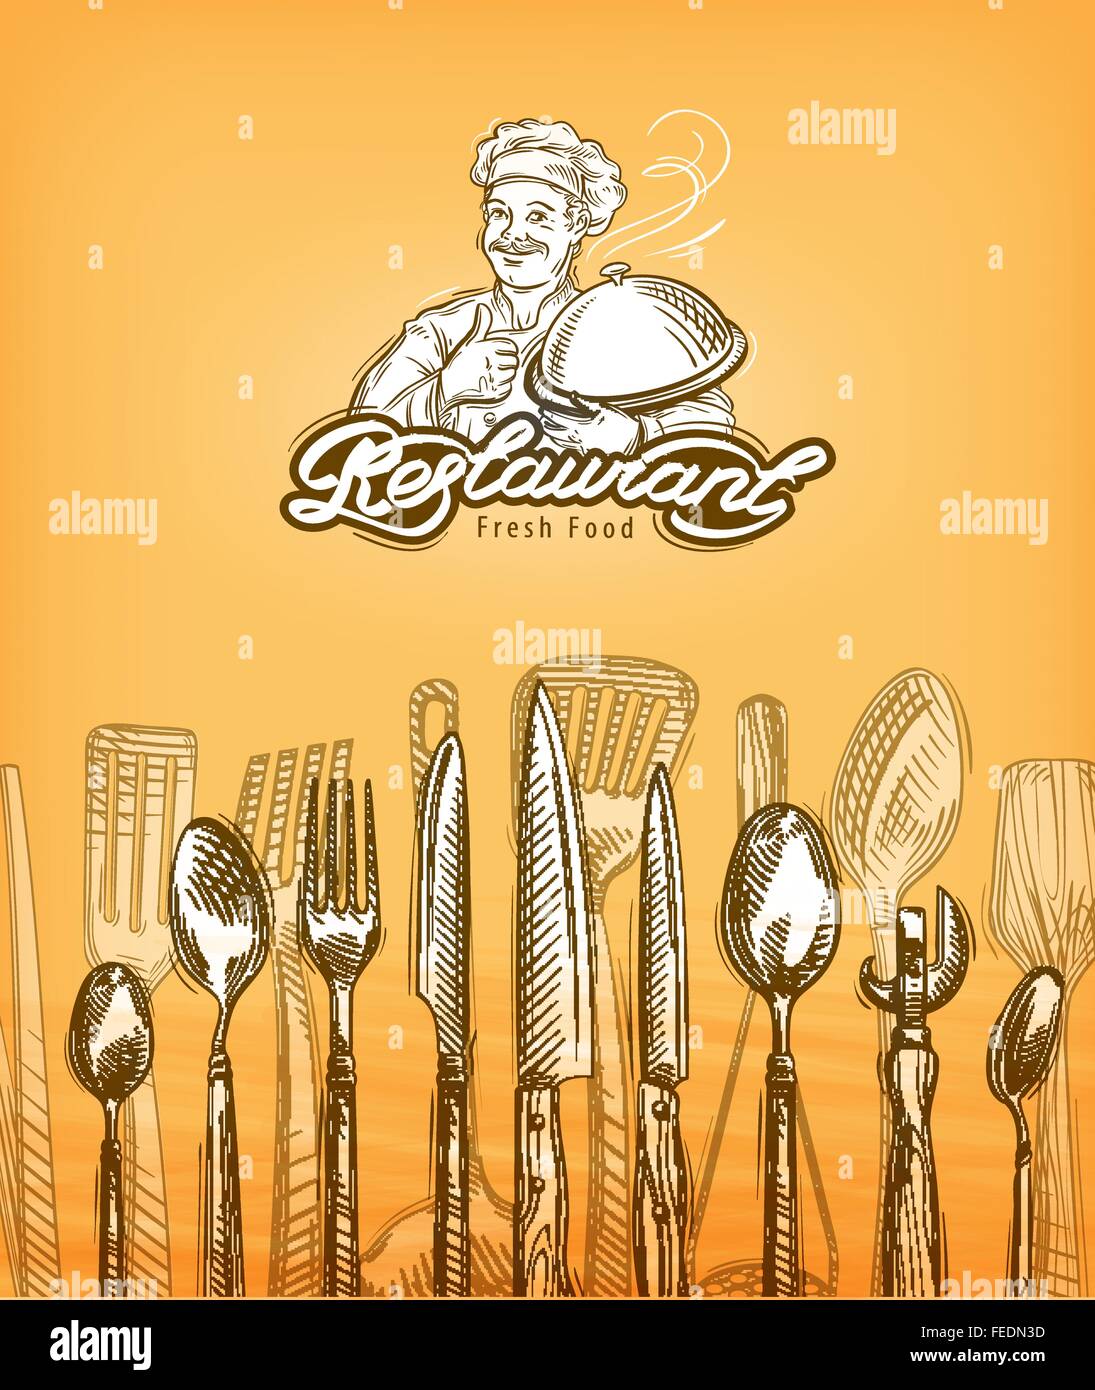 Restaurant oder kochen, Besteck Skizze. Vektor-illustration Stock Vektor